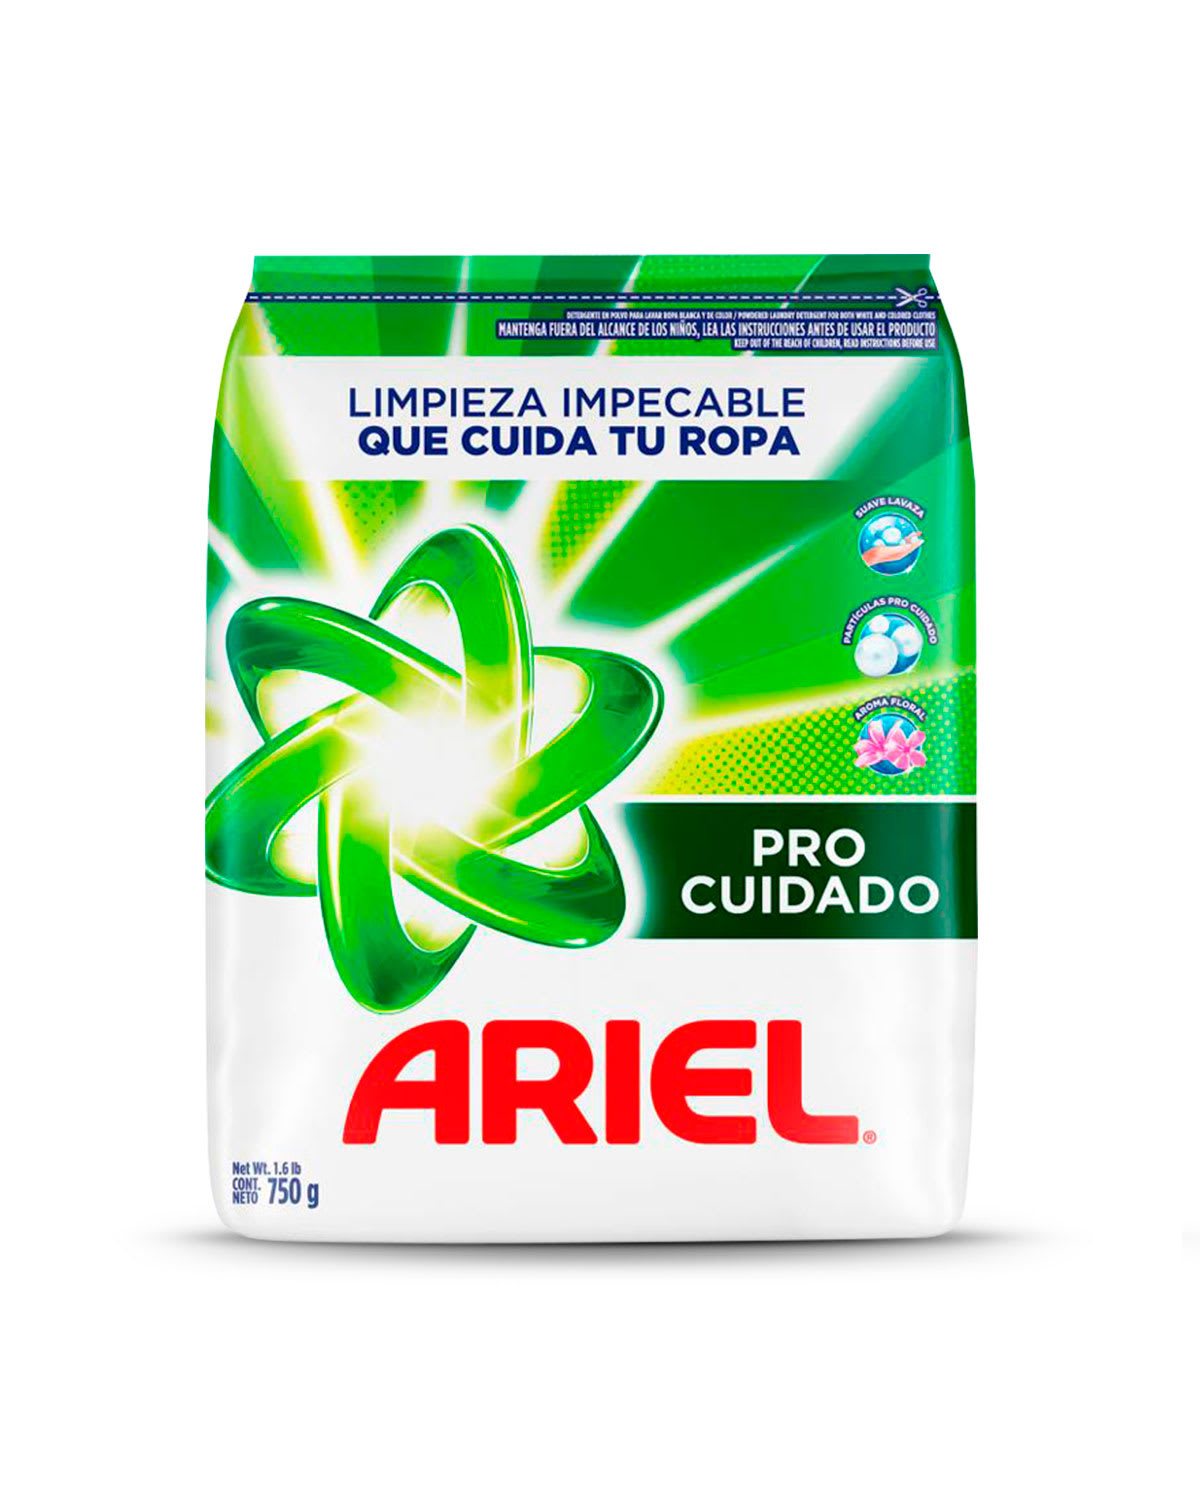 Ariel Pro Cuidado detergente en polvo para lavar la ropa blanca y de c